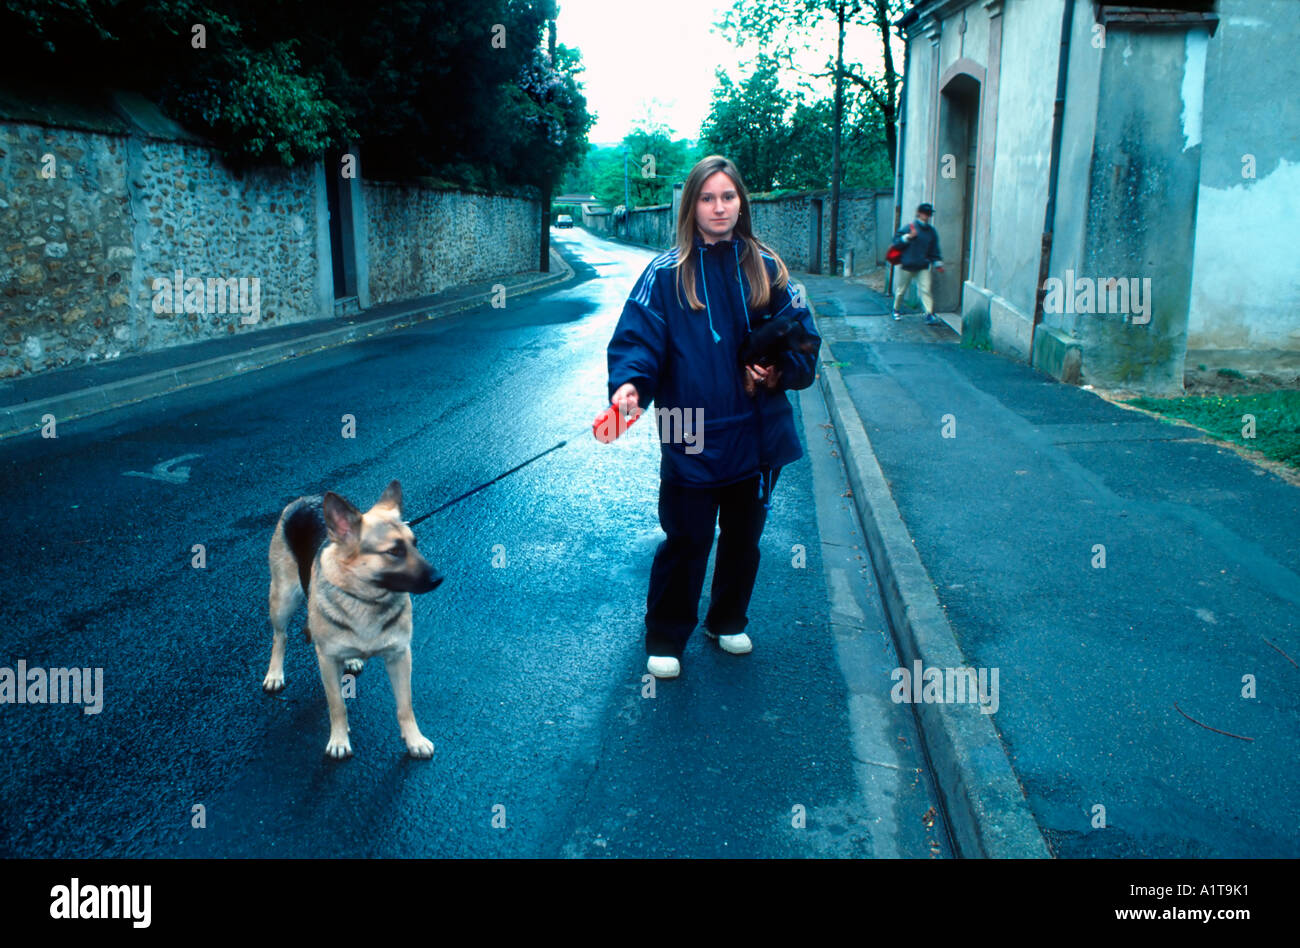 Paris France, jeune française Teen, chien de marche, après l'école Job sur la rue, seule attente en plein air, pluie, rue de banlieue, emplois d'adolescents Banque D'Images